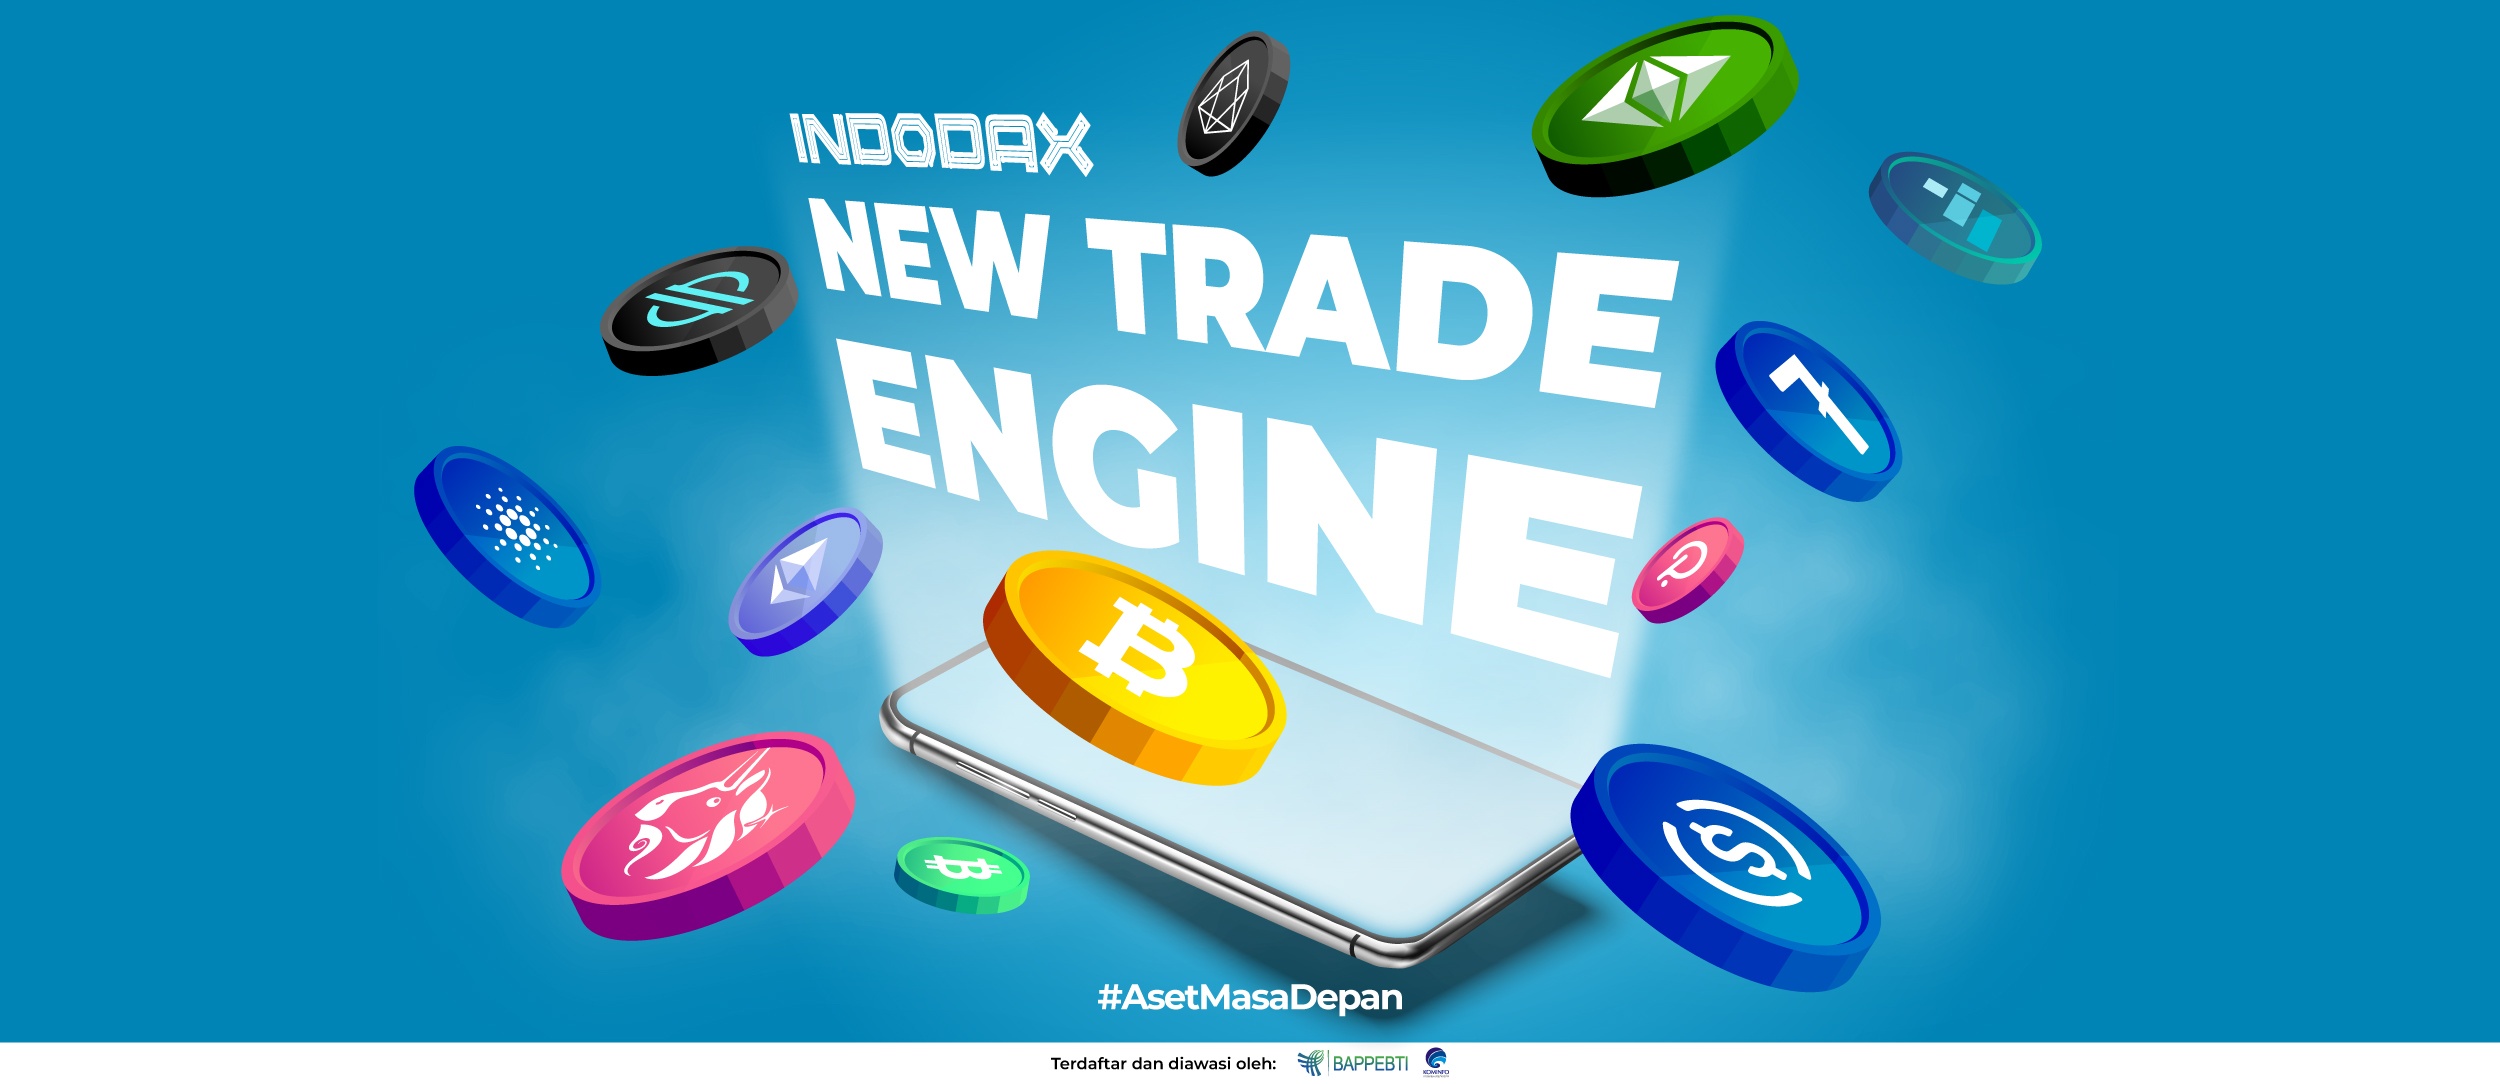 INDODAX New Trade Engine: Bikin Trading Kripto Makin Mudah dan Aman